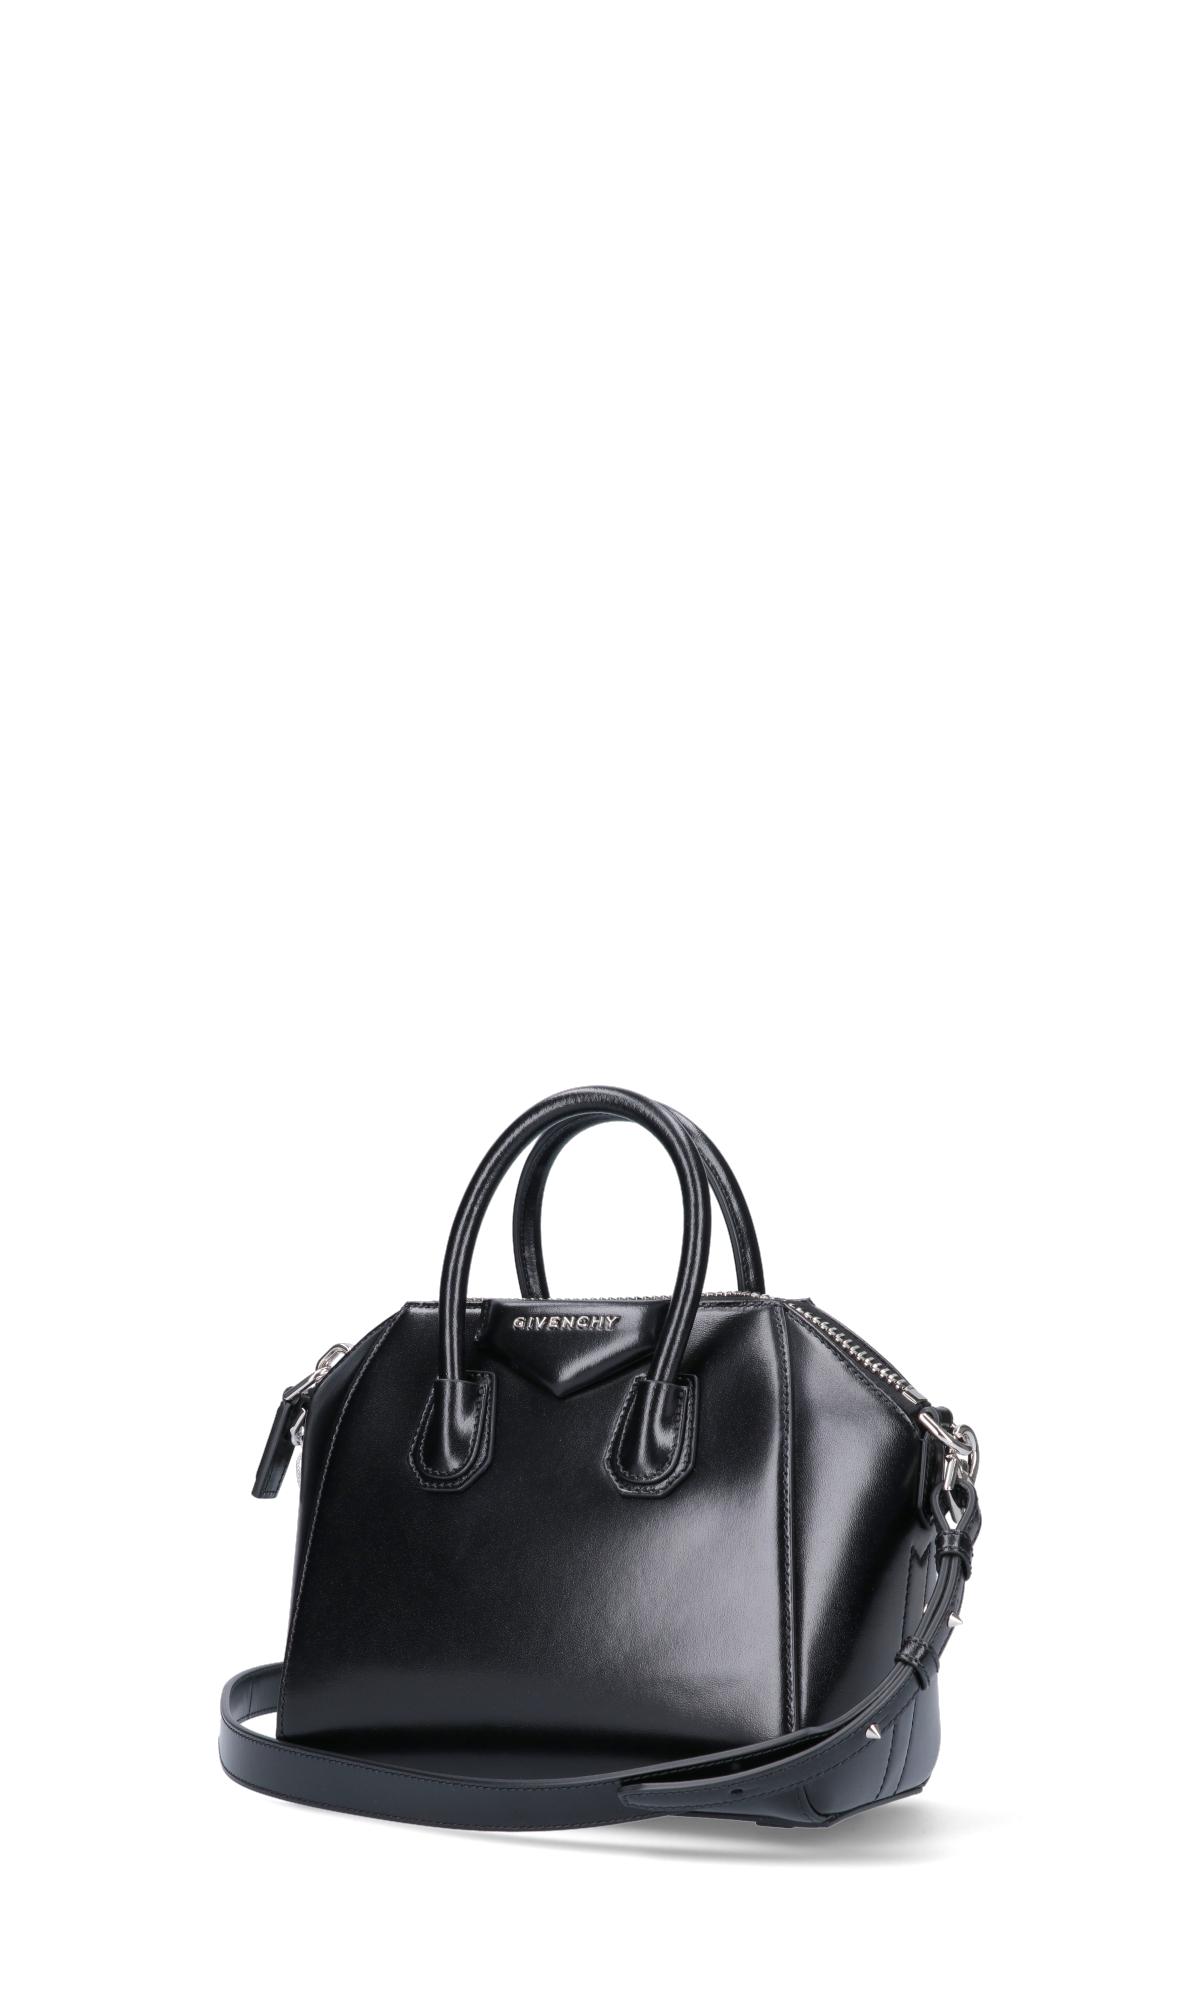 Givenchy Mini Antigona Bag in Black